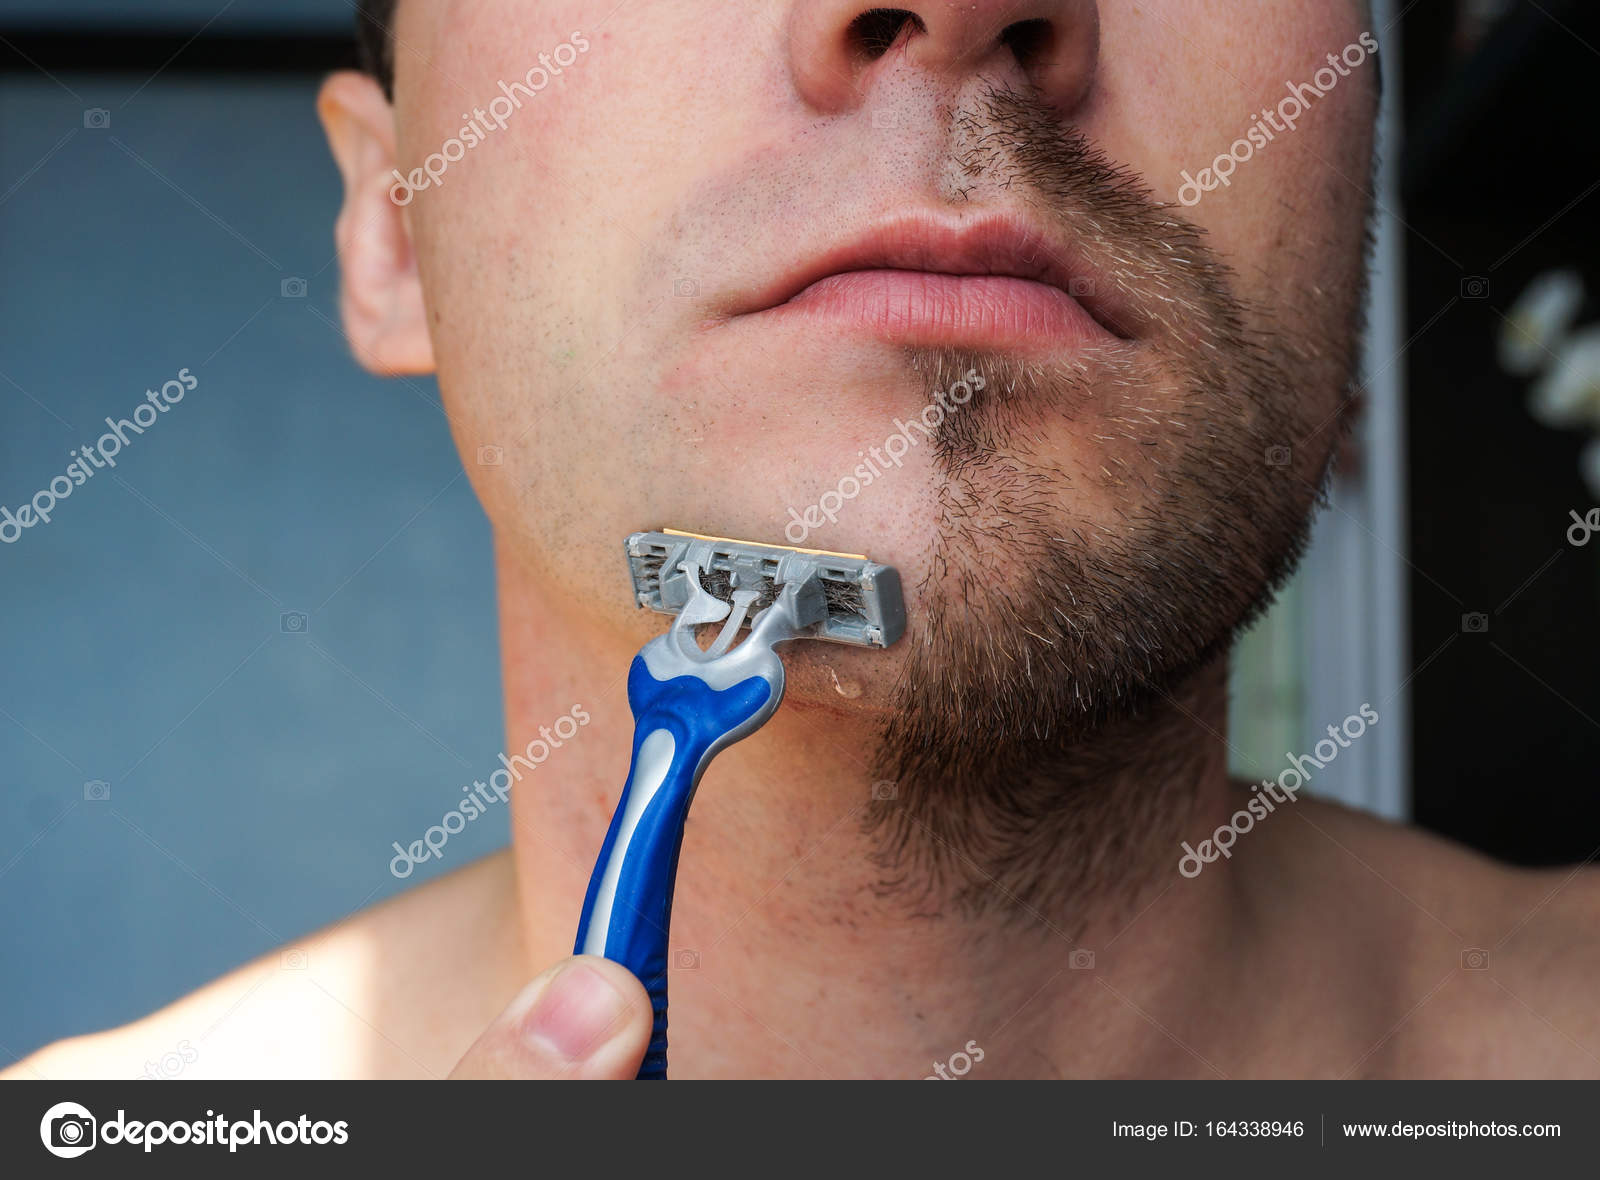 Shaving dick